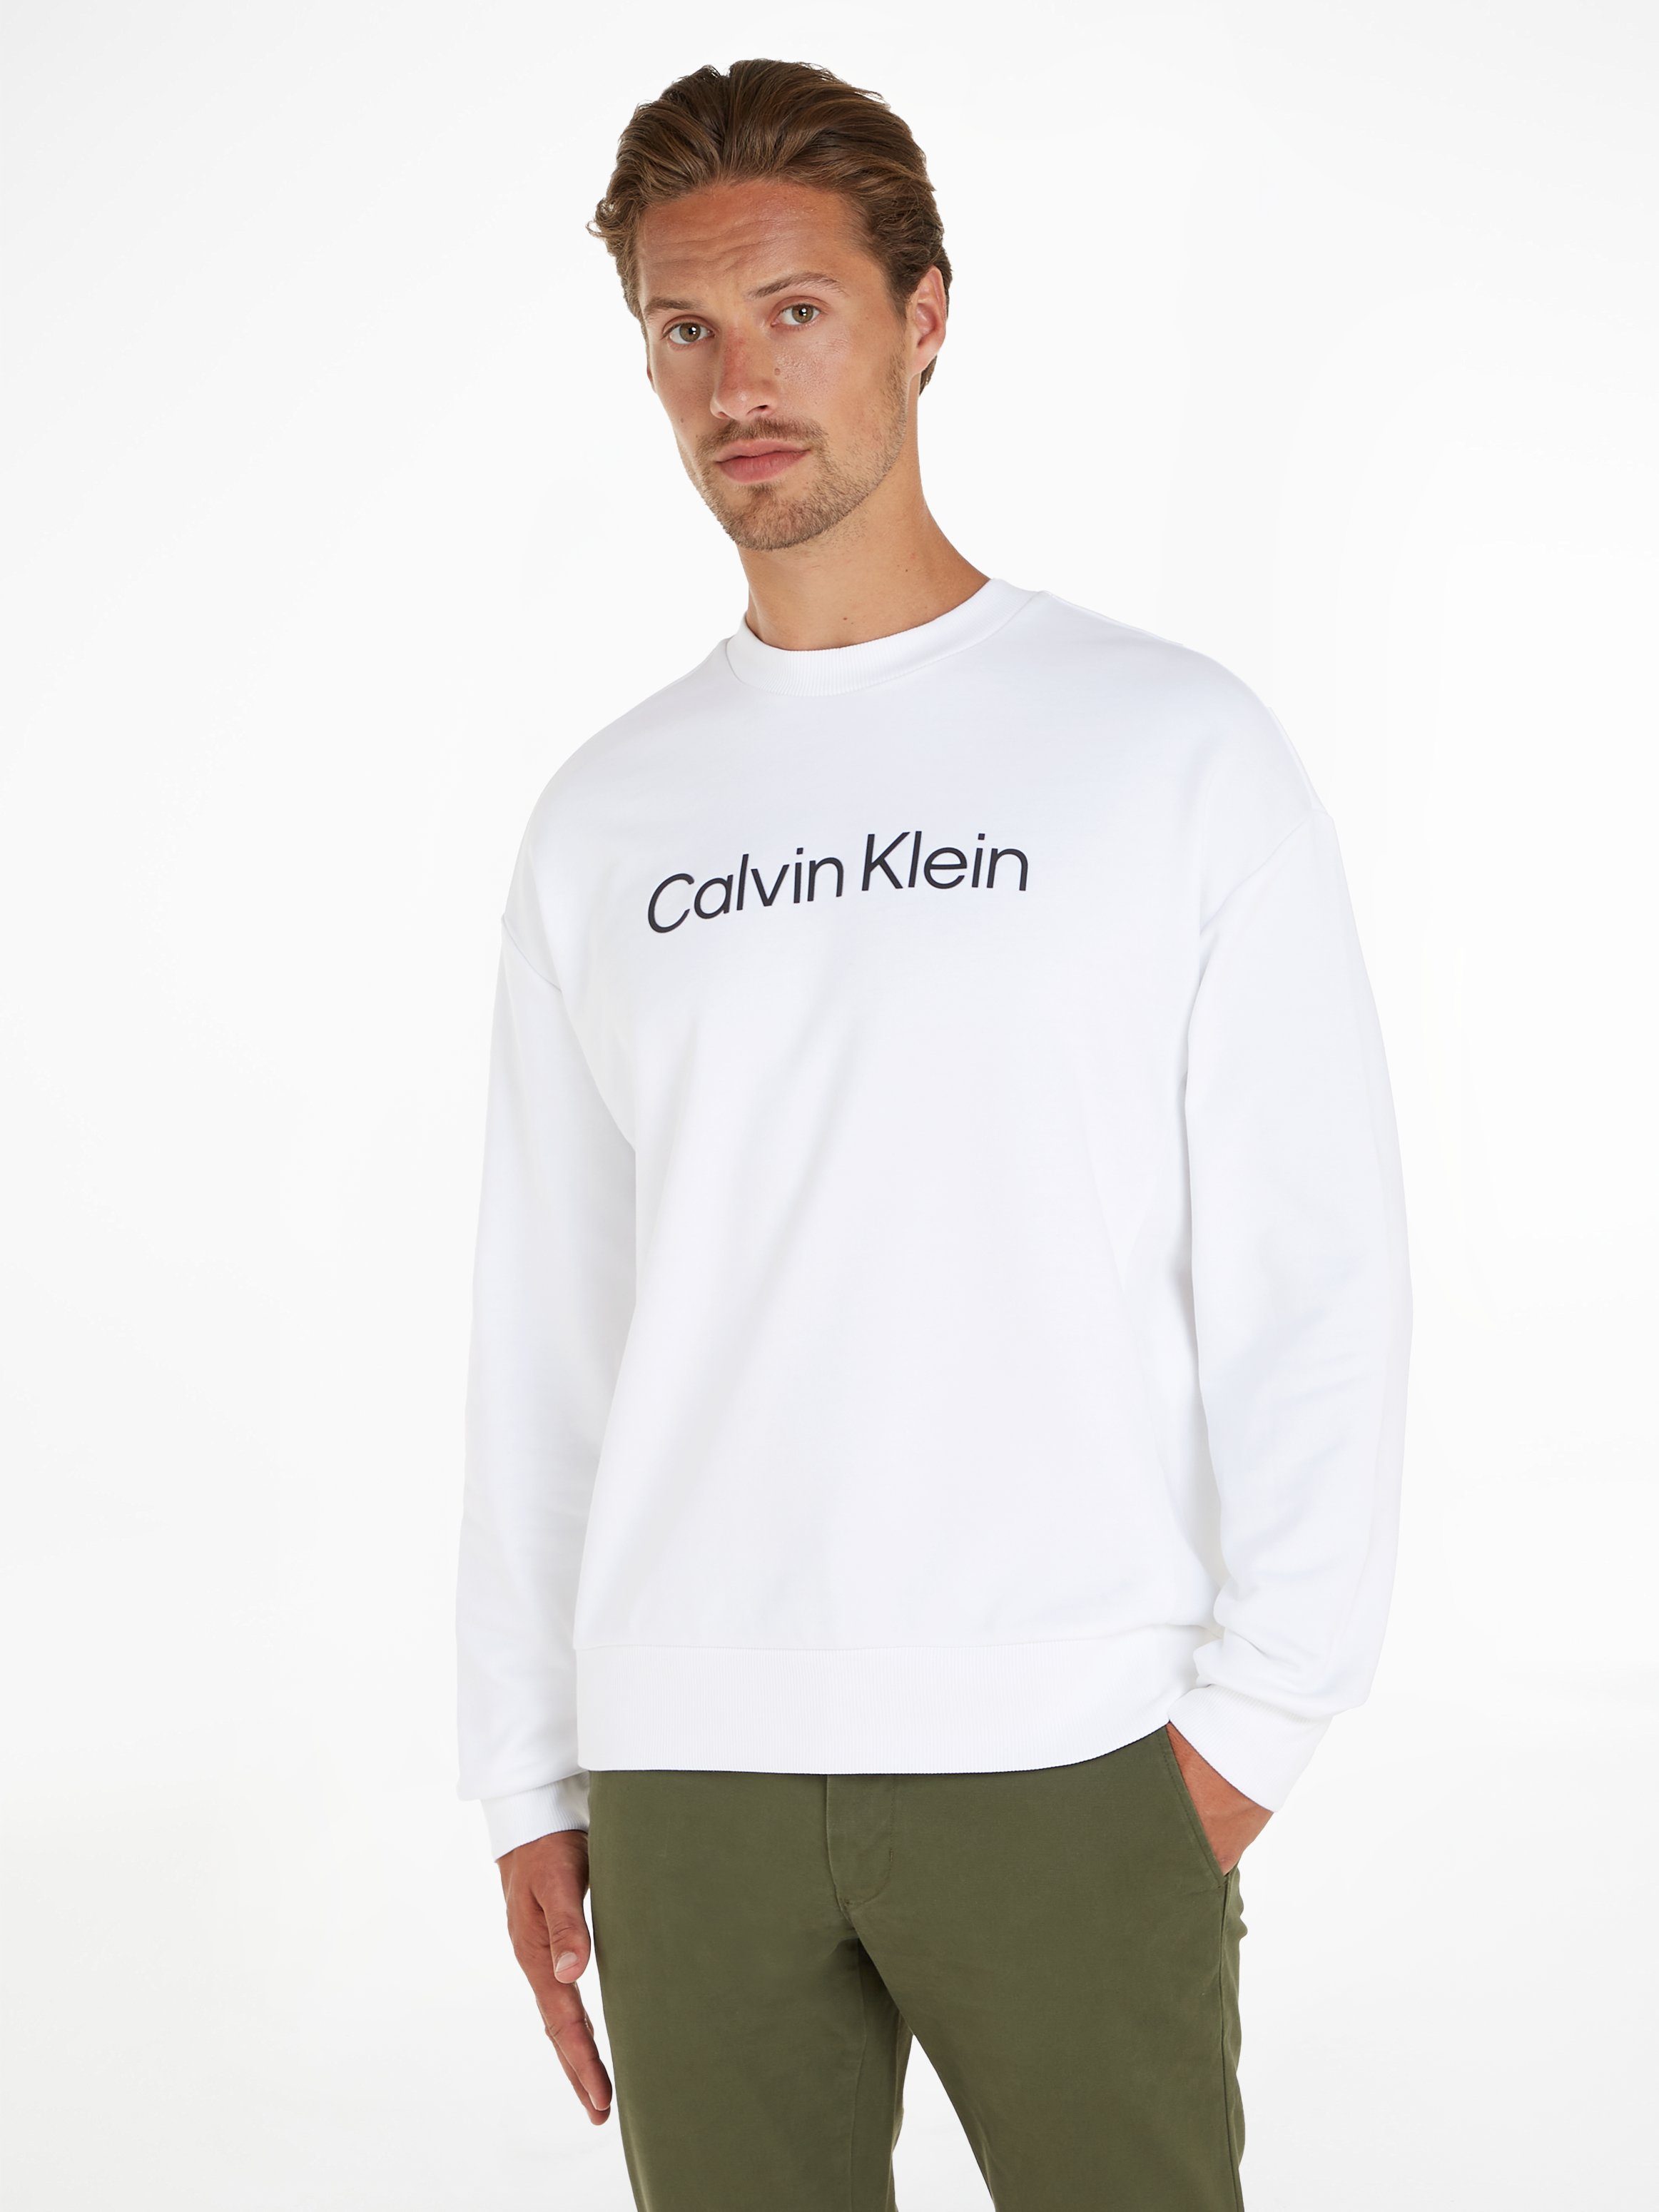 COMFORT Klein Markenlabel Sweatshirt White SWEATSHIRT mit Bright HERO Calvin LOGO